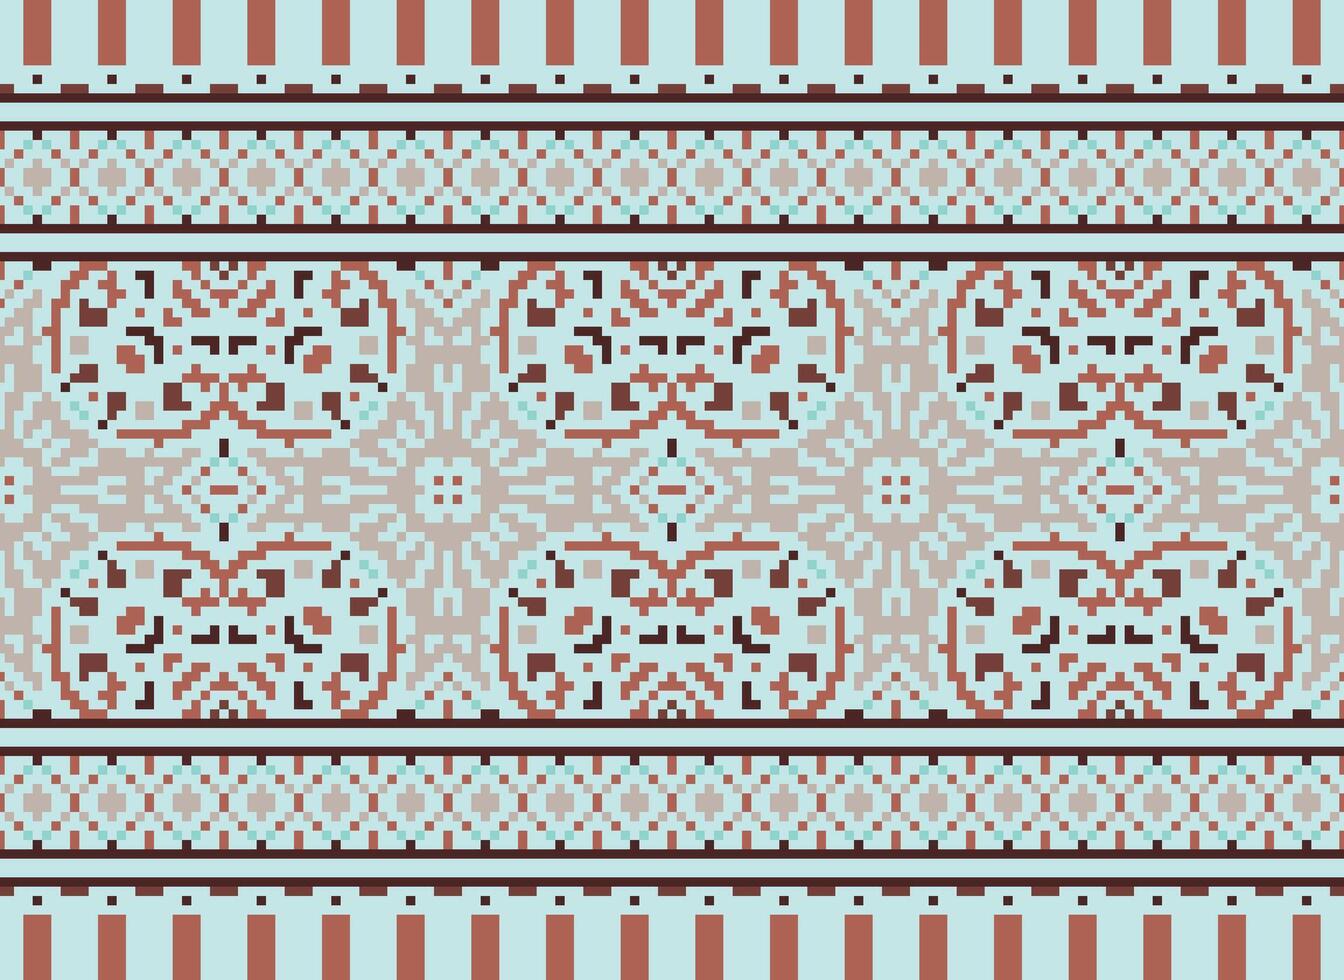 bloem borduurwerk Aan bruin achtergrond. ikat en kruis steek meetkundig naadloos patroon etnisch oosters traditioneel. aztec stijl illustratie ontwerp voor tapijt, behang, kleding, inpakken, batik. vector